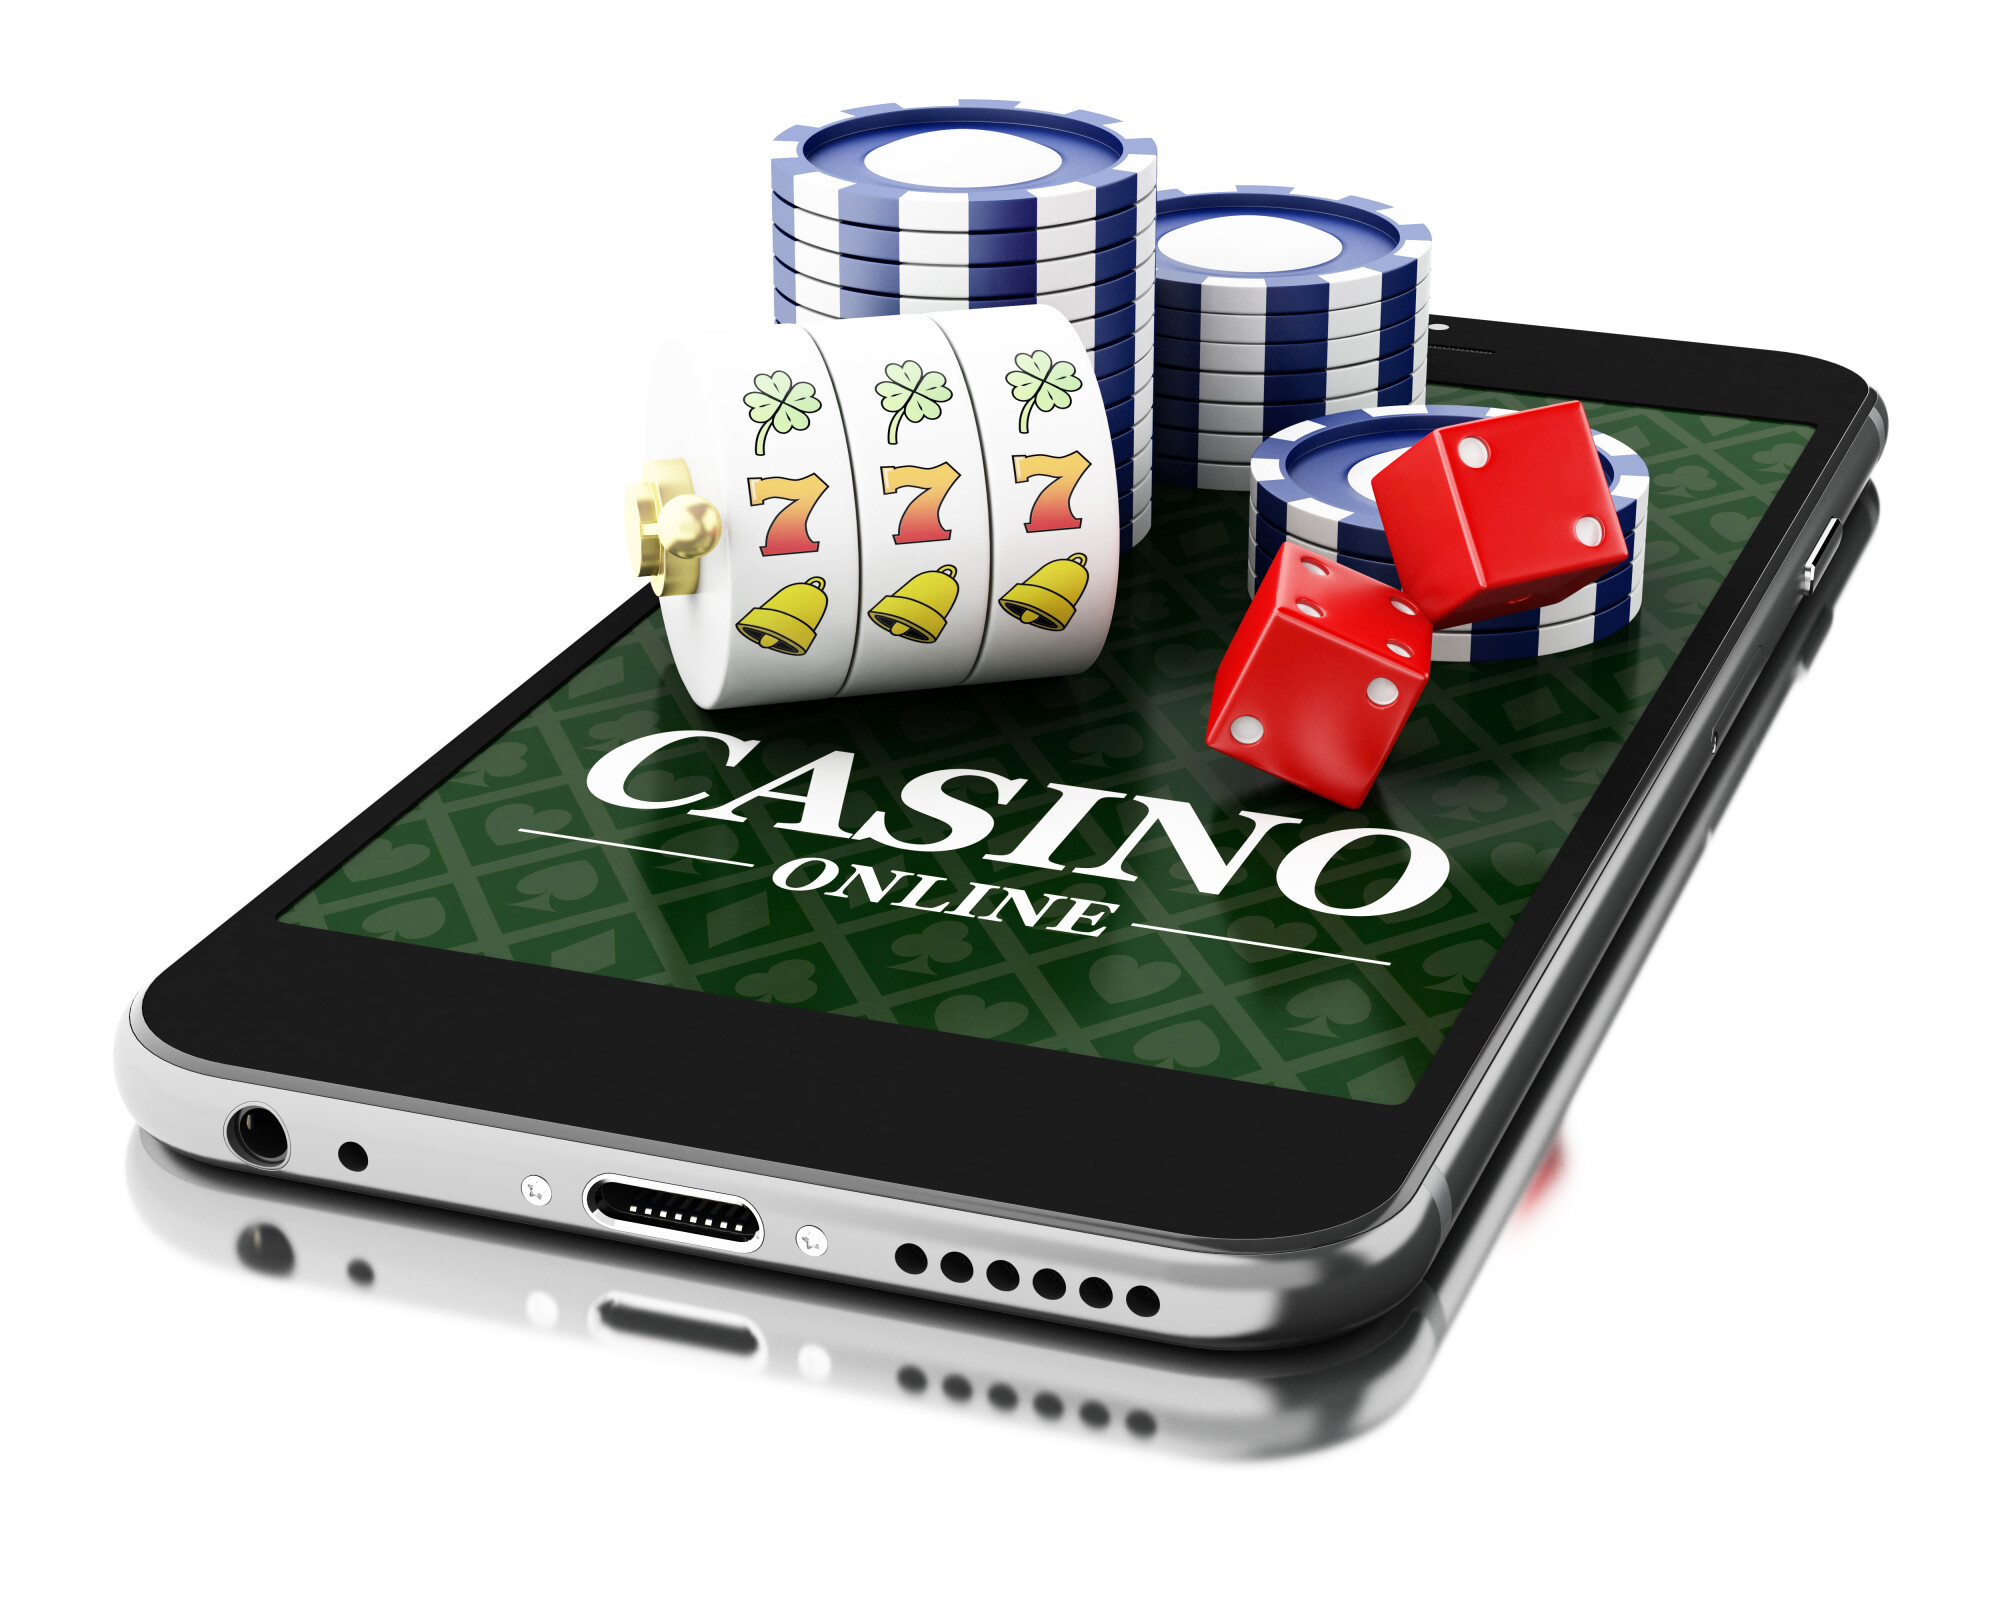 Mobile casino game